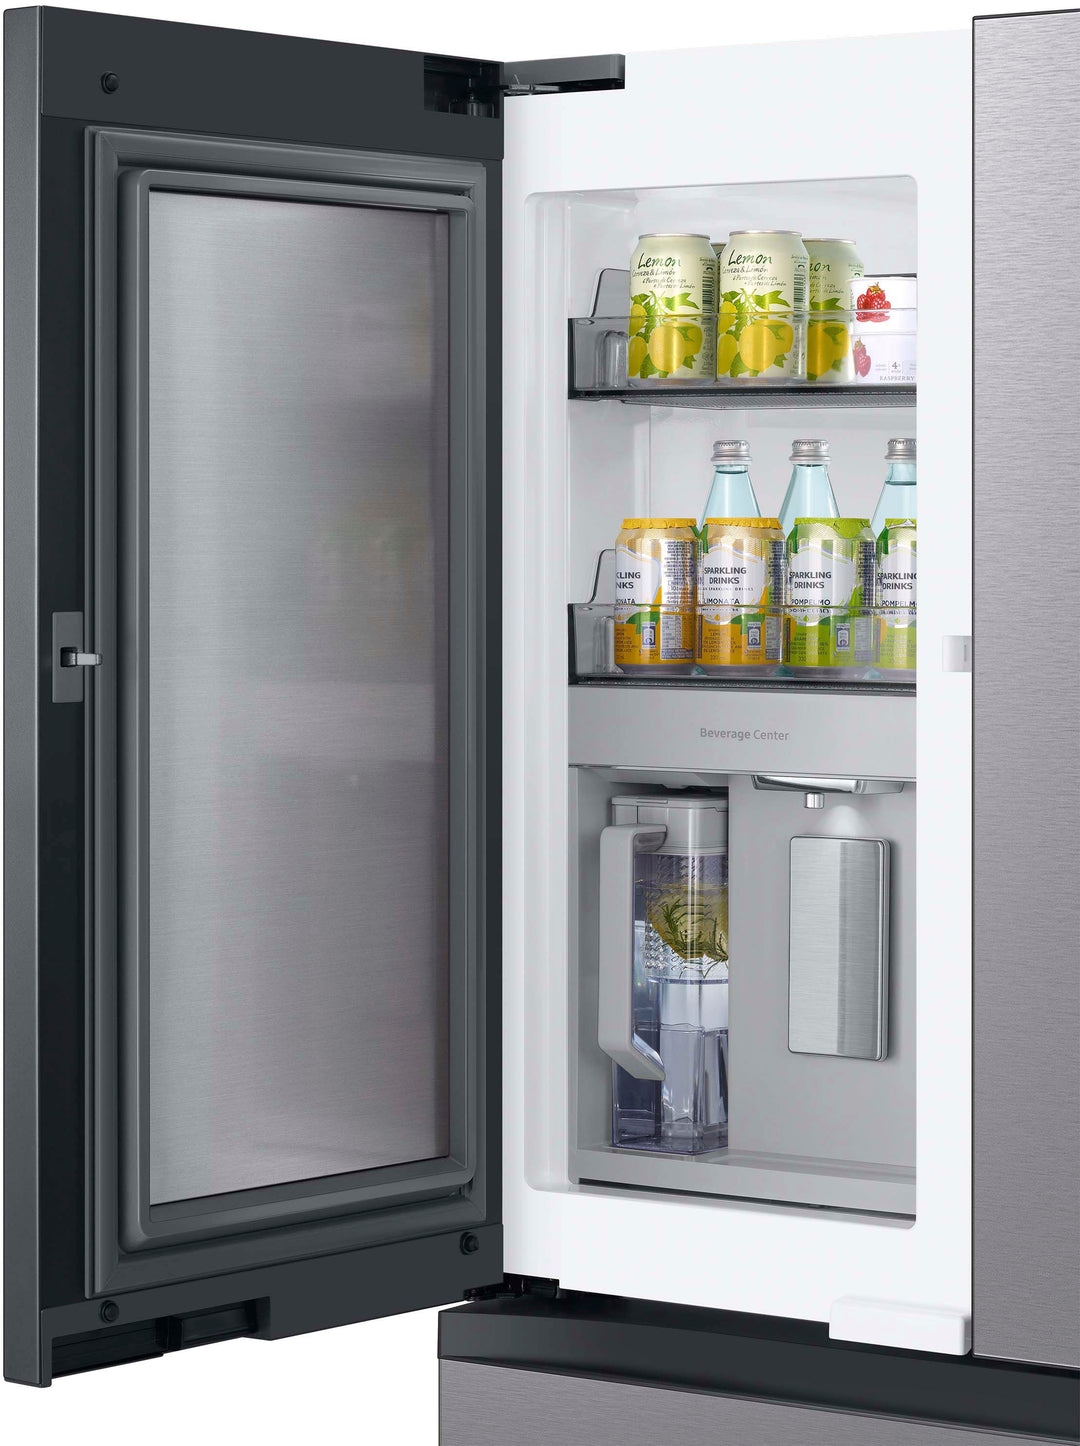 Samsung - Bespoke 23 cu. ft. Counter Depth 4-Door French Door Refrigerator with Beverage Center - Stainless steel_11